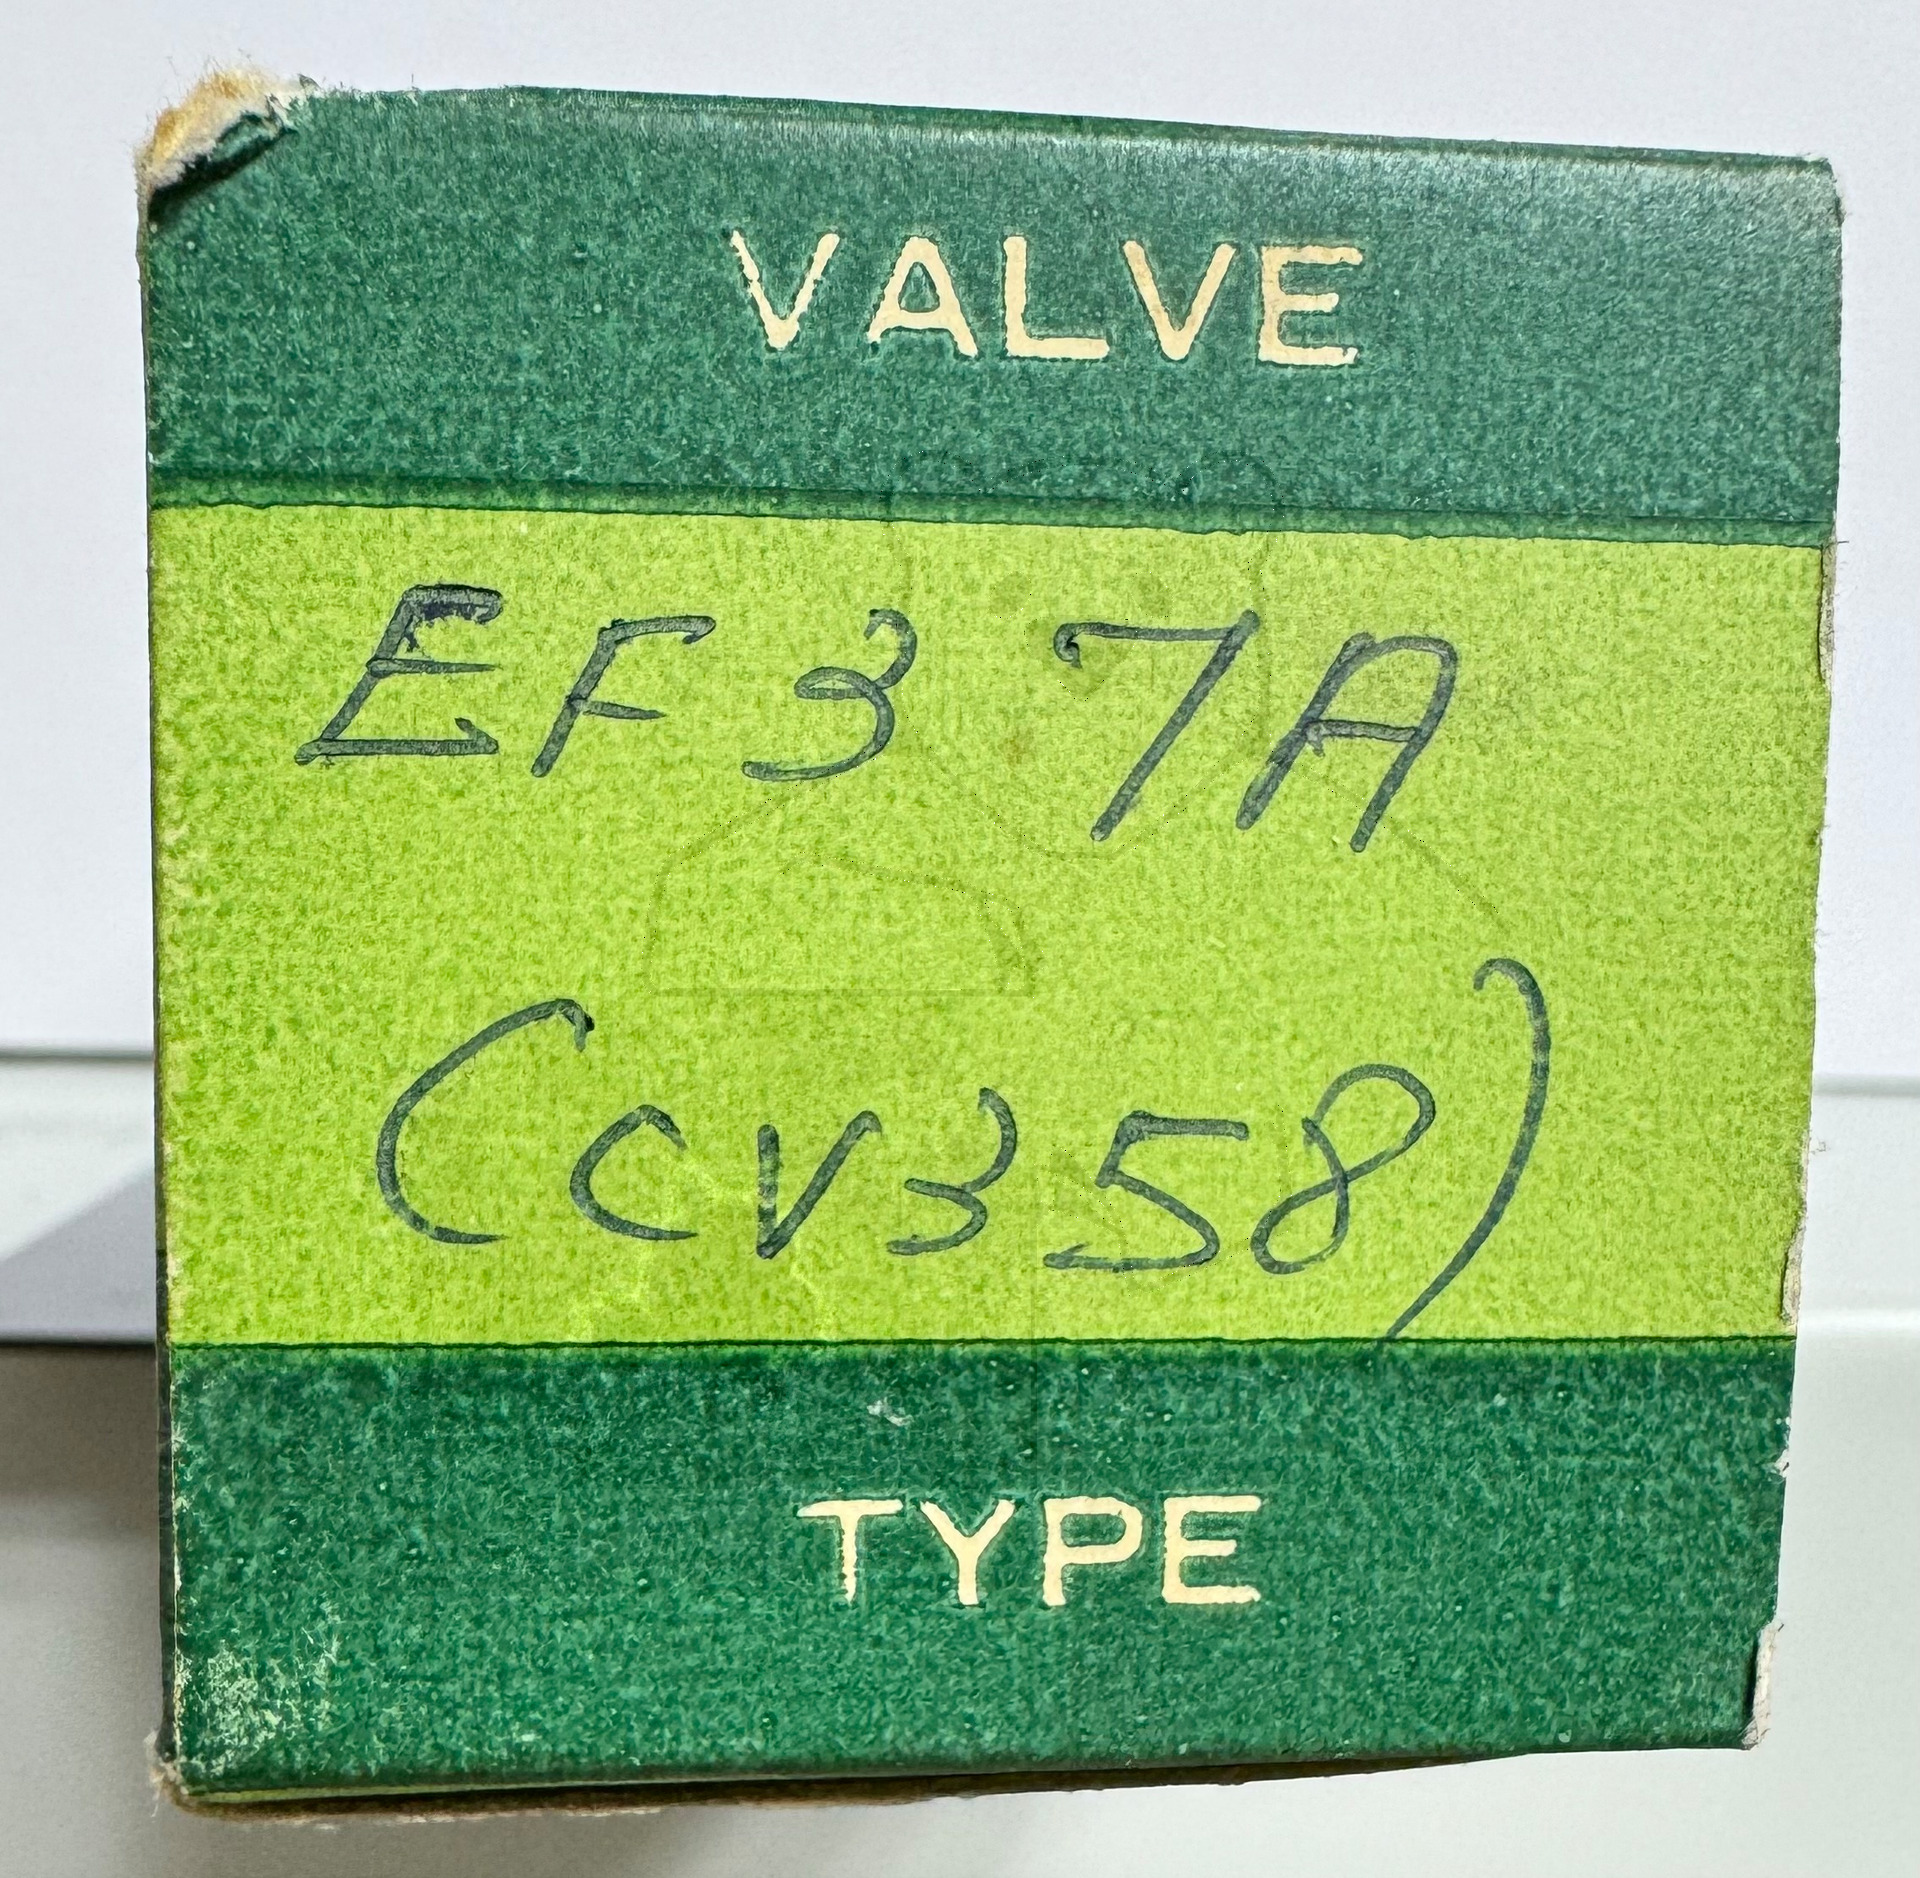 Röhre EF37A #7670 CV385 Verpackung Bild 3